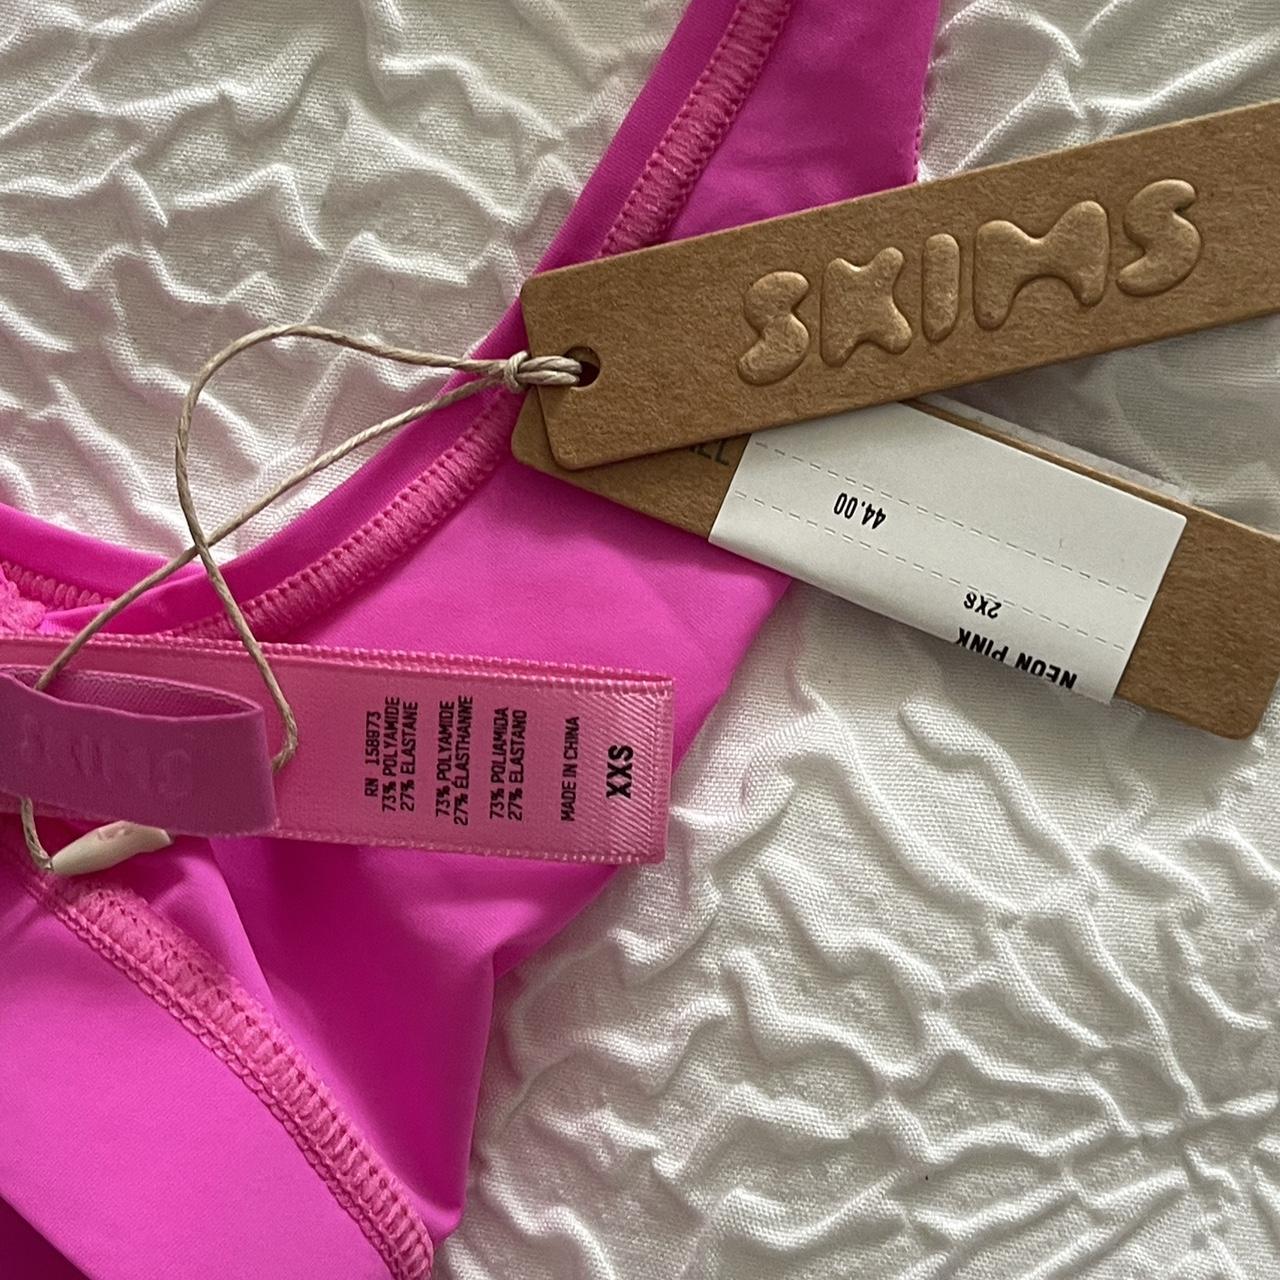 Skims Women's Pink Nightwear | Depop